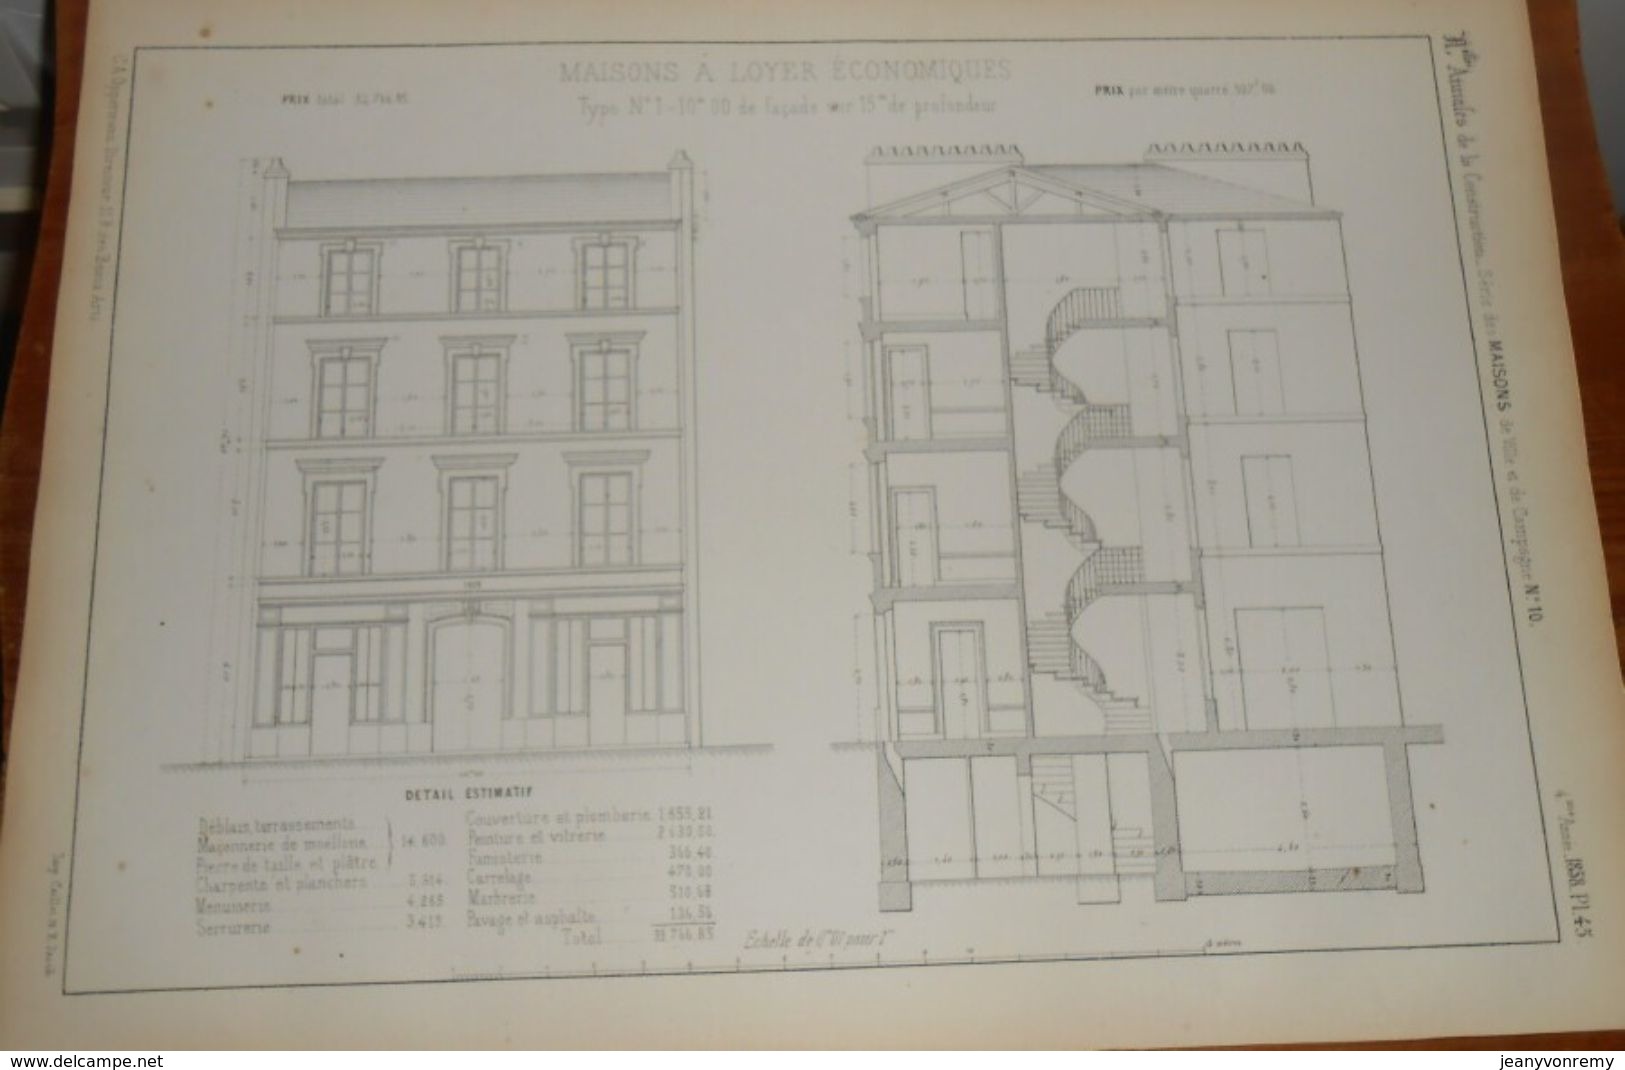 Plan De Maison à Loyer économique. 1858 - Opere Pubbliche